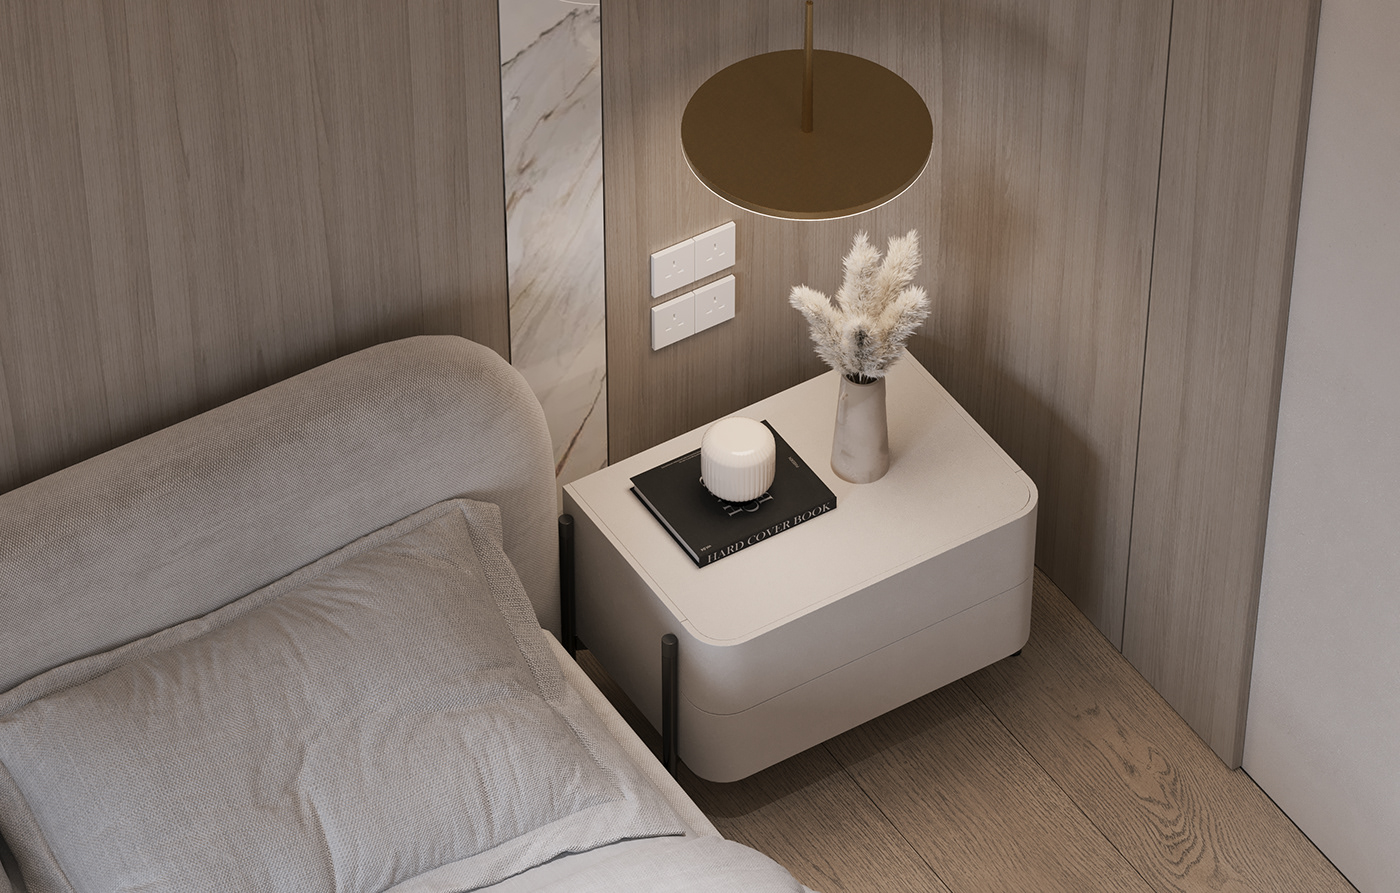 Interior minimal Minimalism minimalist apartment living design lounge modern simple